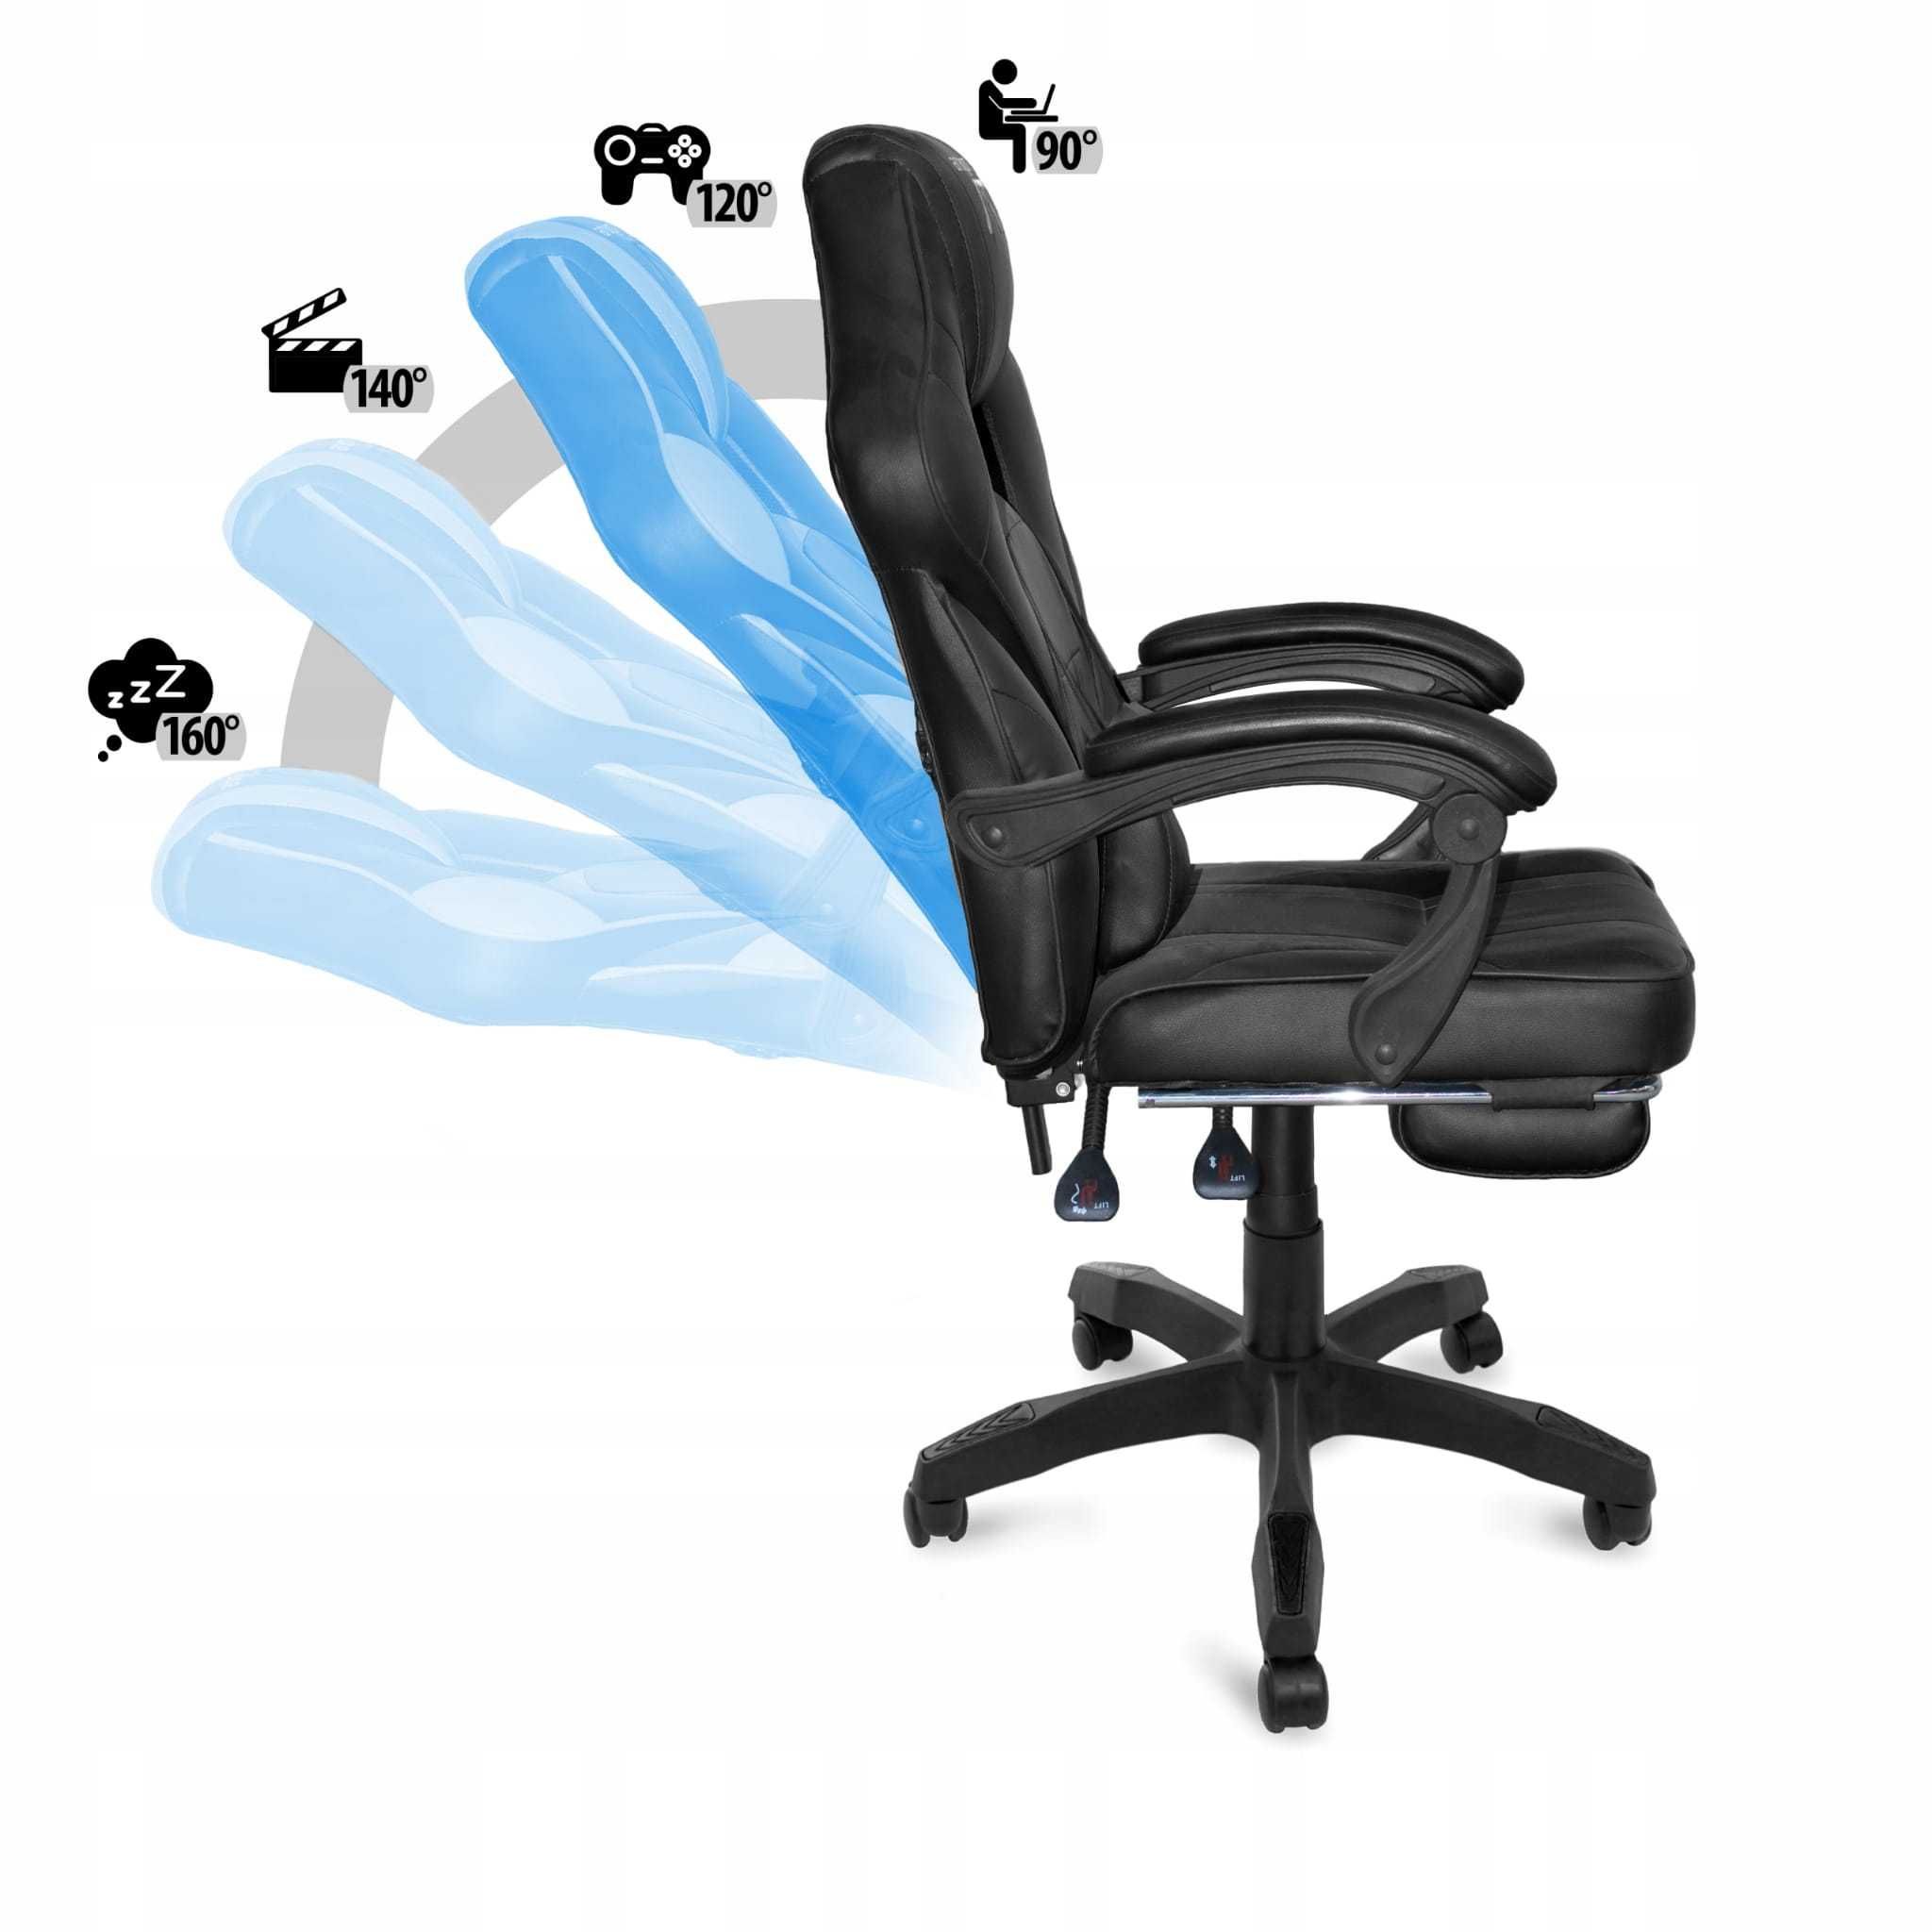 Геймерське/офісне крісло AGURI 3 КОЛЬОРИ ПОЛЬЩА нові